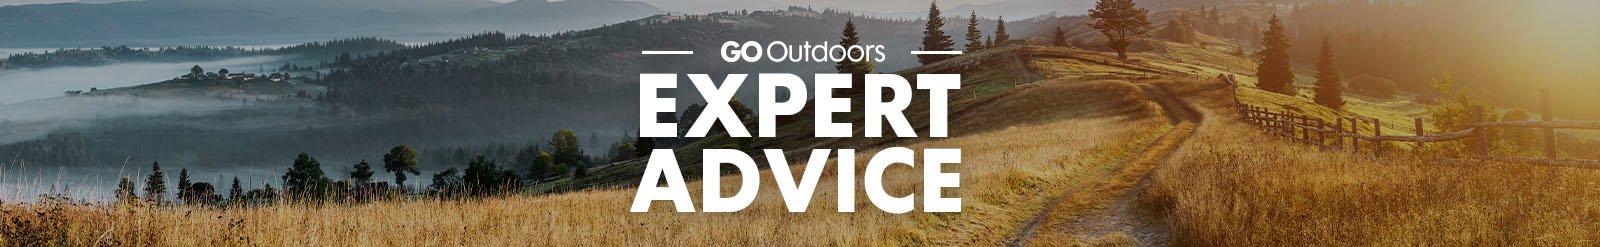 GO Outdoors Expert Advice